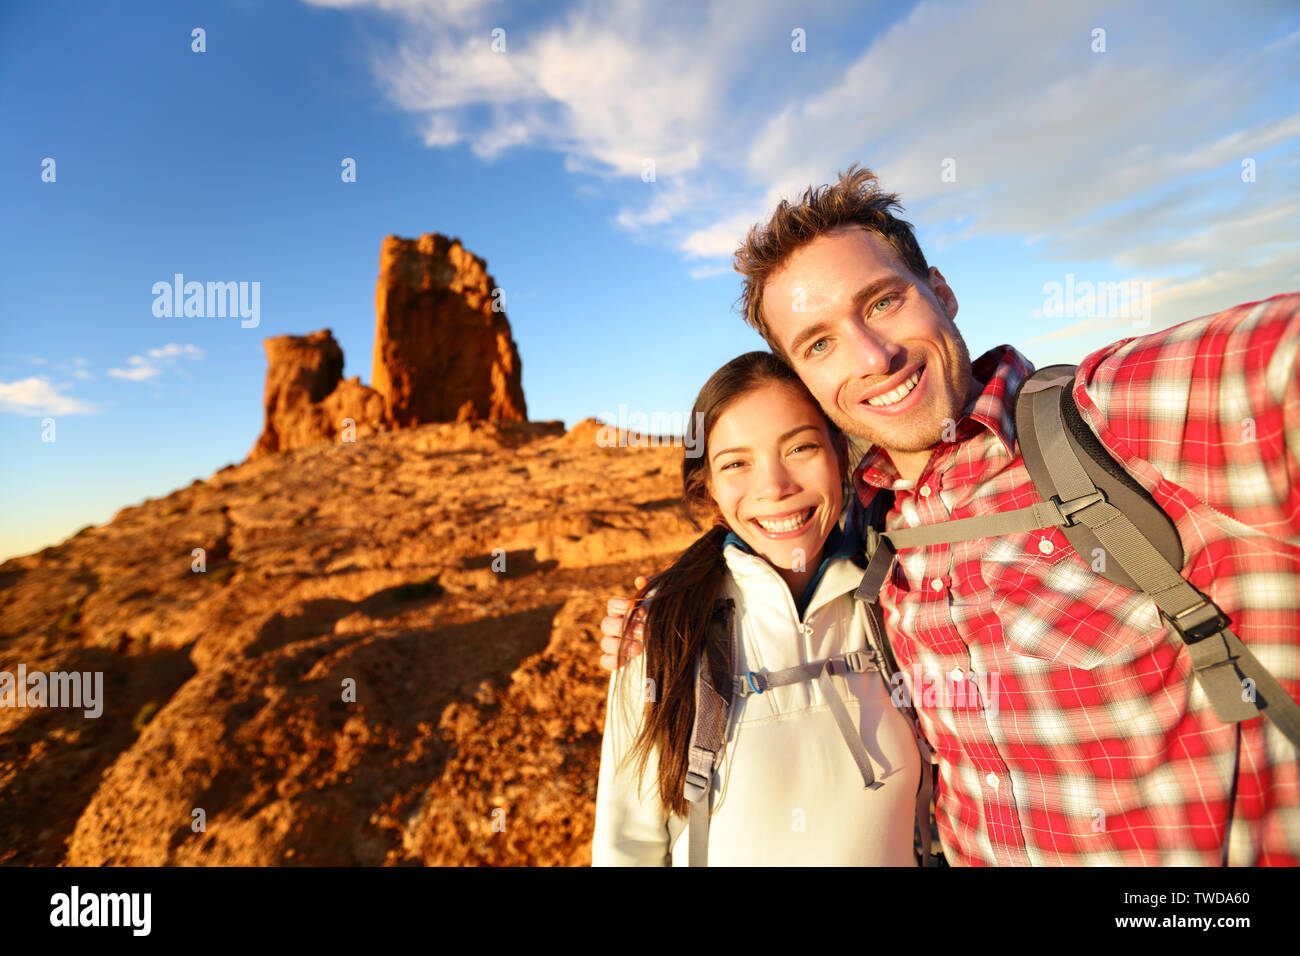 Selfie - glückliches Paar, self portrait Foto wandern. Zwei Liebende oder Freunden auf Wanderung in die Kamera lächeln im Freien Berge von Roque Nublo, Gran Canaria, Kanarische Inseln, Spanien. Stockfoto